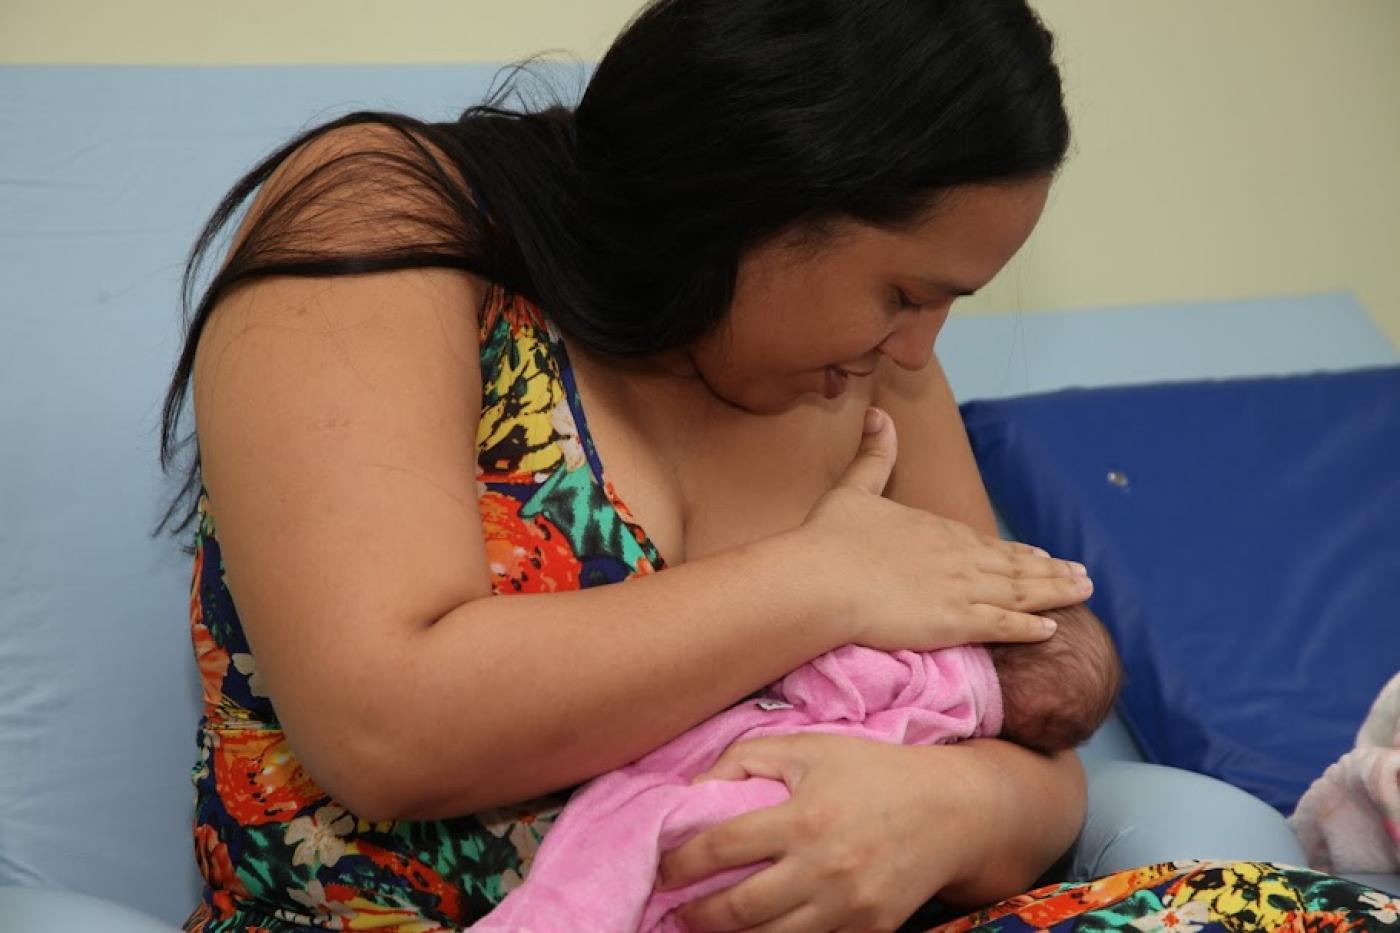 mulher amamenta bebê. Ela cobre o seio e o rostinho da criança ao mesmo tempo em que olha para o bebê. #paratodosverem